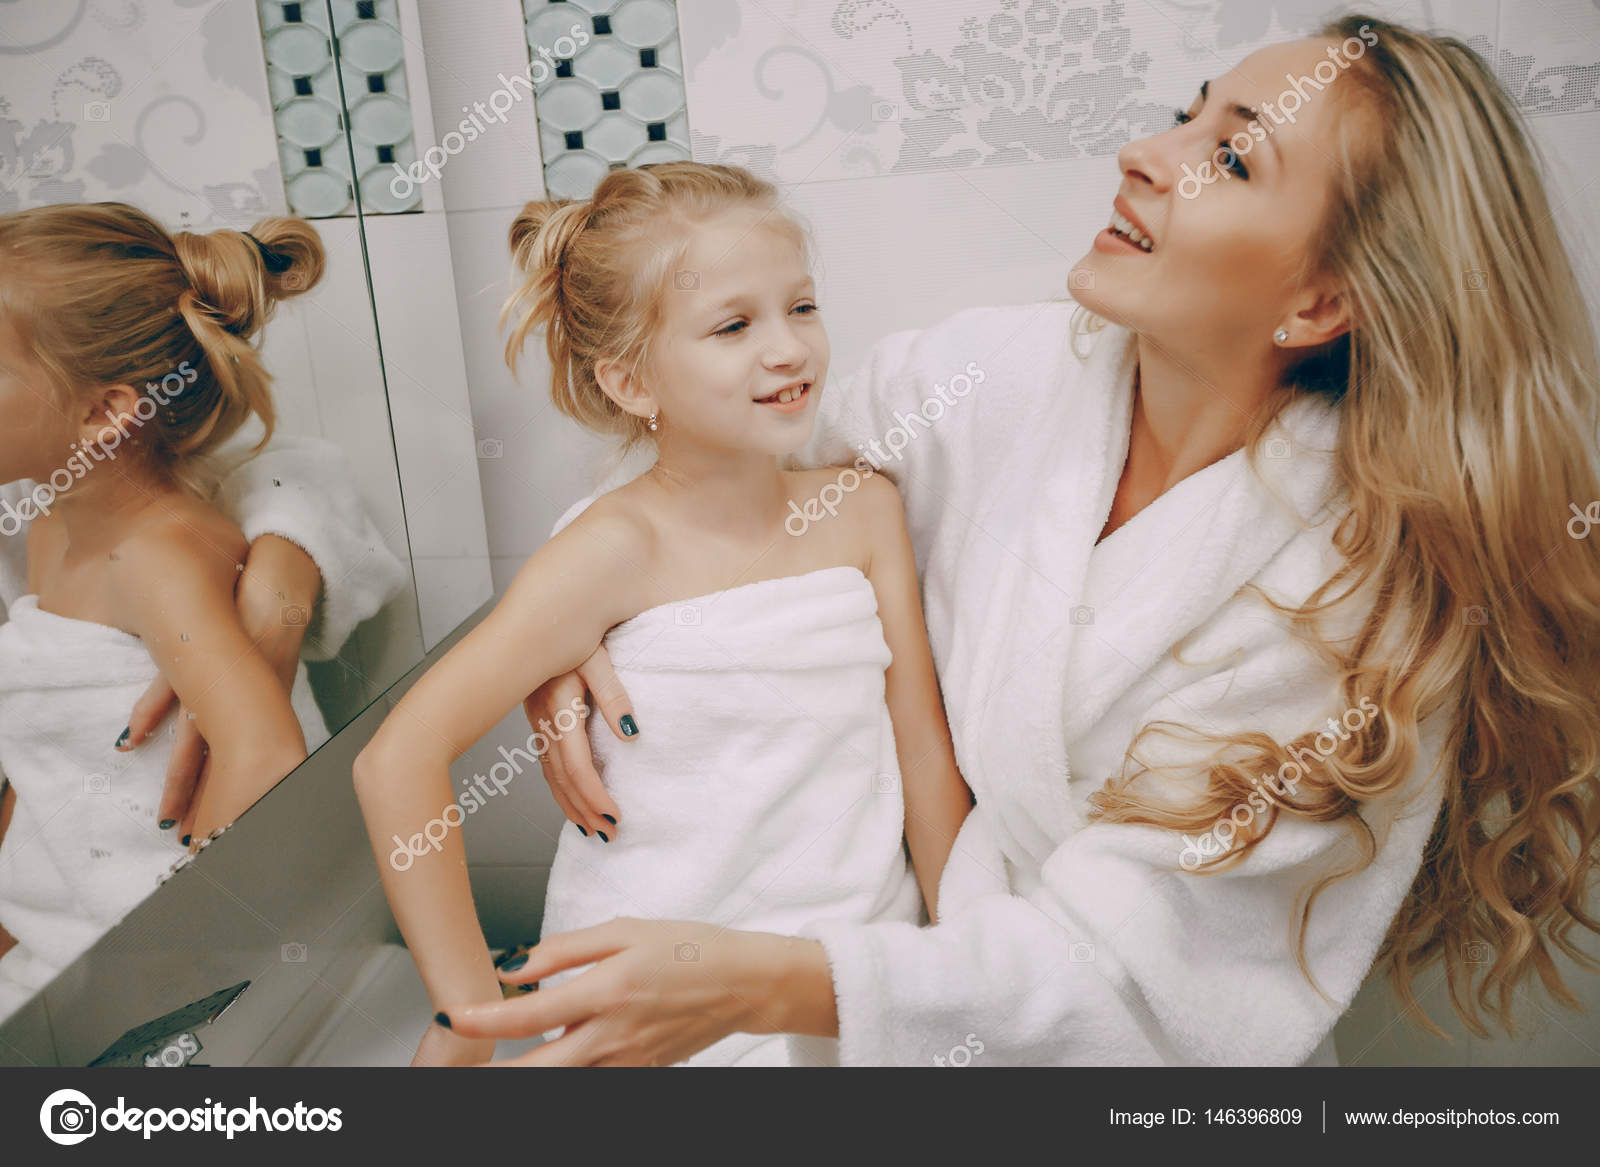 Мамочка лижет пизду своей дочери в ванной